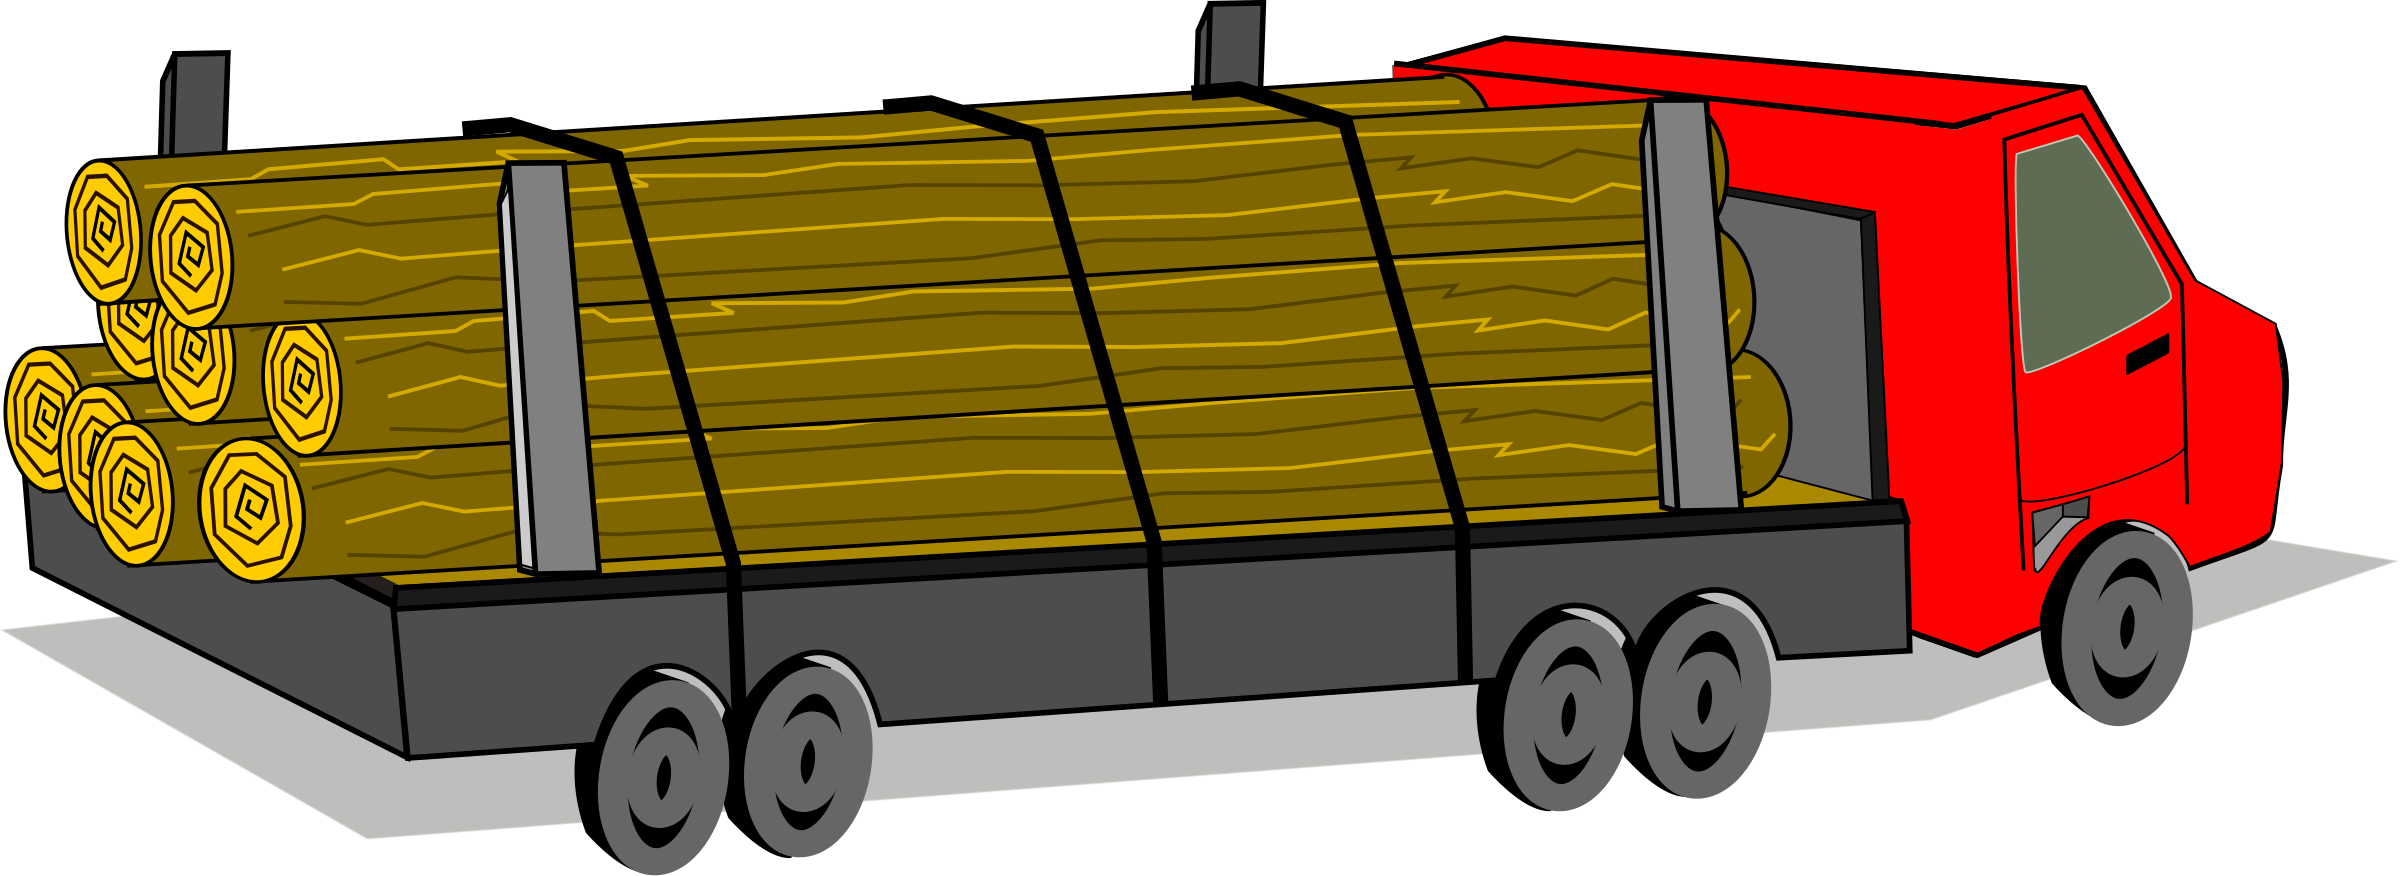 Log trucks c a. Clipart pumpkin truck